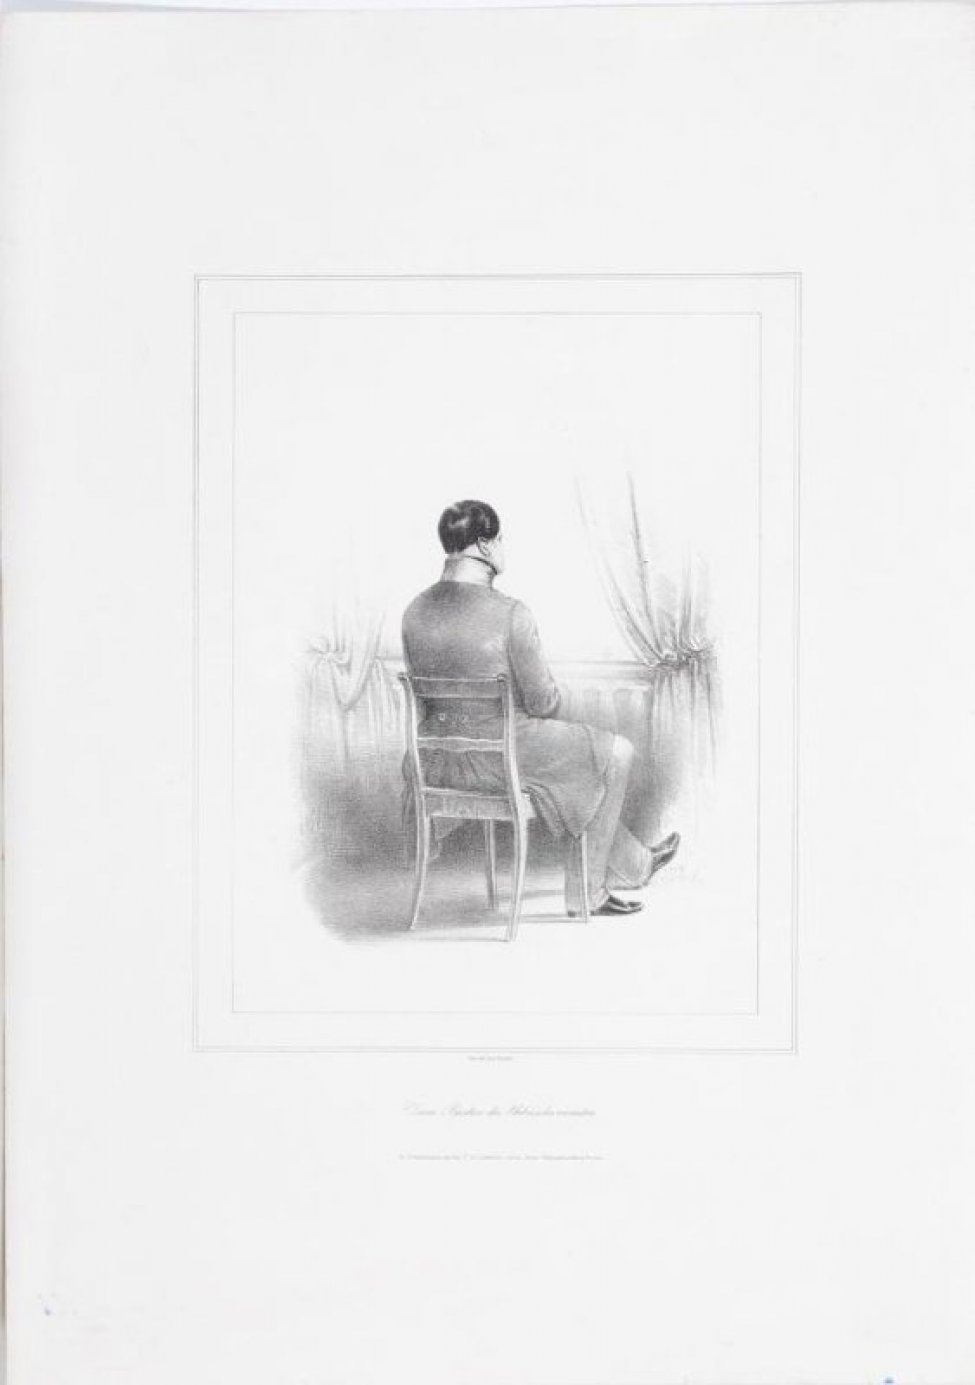 Король изображен сидящим на стуле спиной к зрителю. Одет в длинный мундир с высоким воротником, длинные брюки и штиблеты. За его фигурой видна балюстрада с занавесями по сторонам. Под изображением надпись по-немецки.